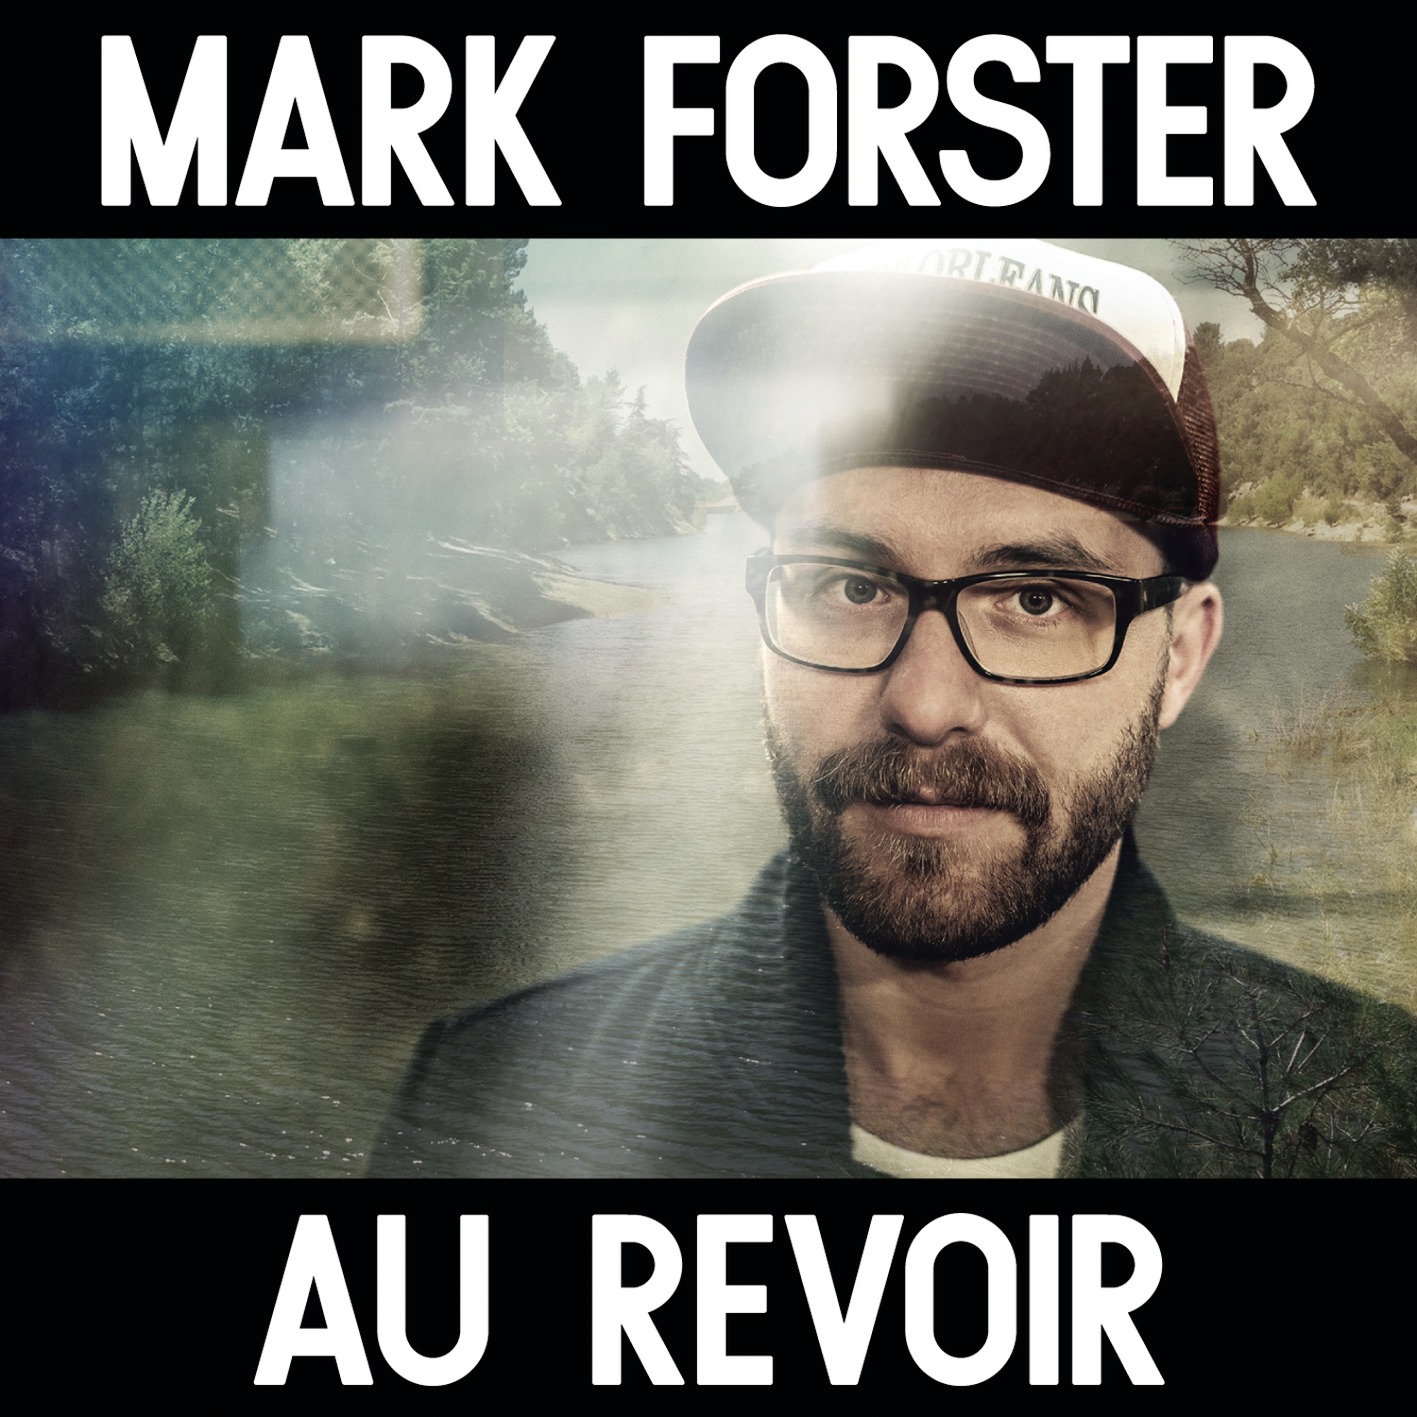 Mark forster au revoir single